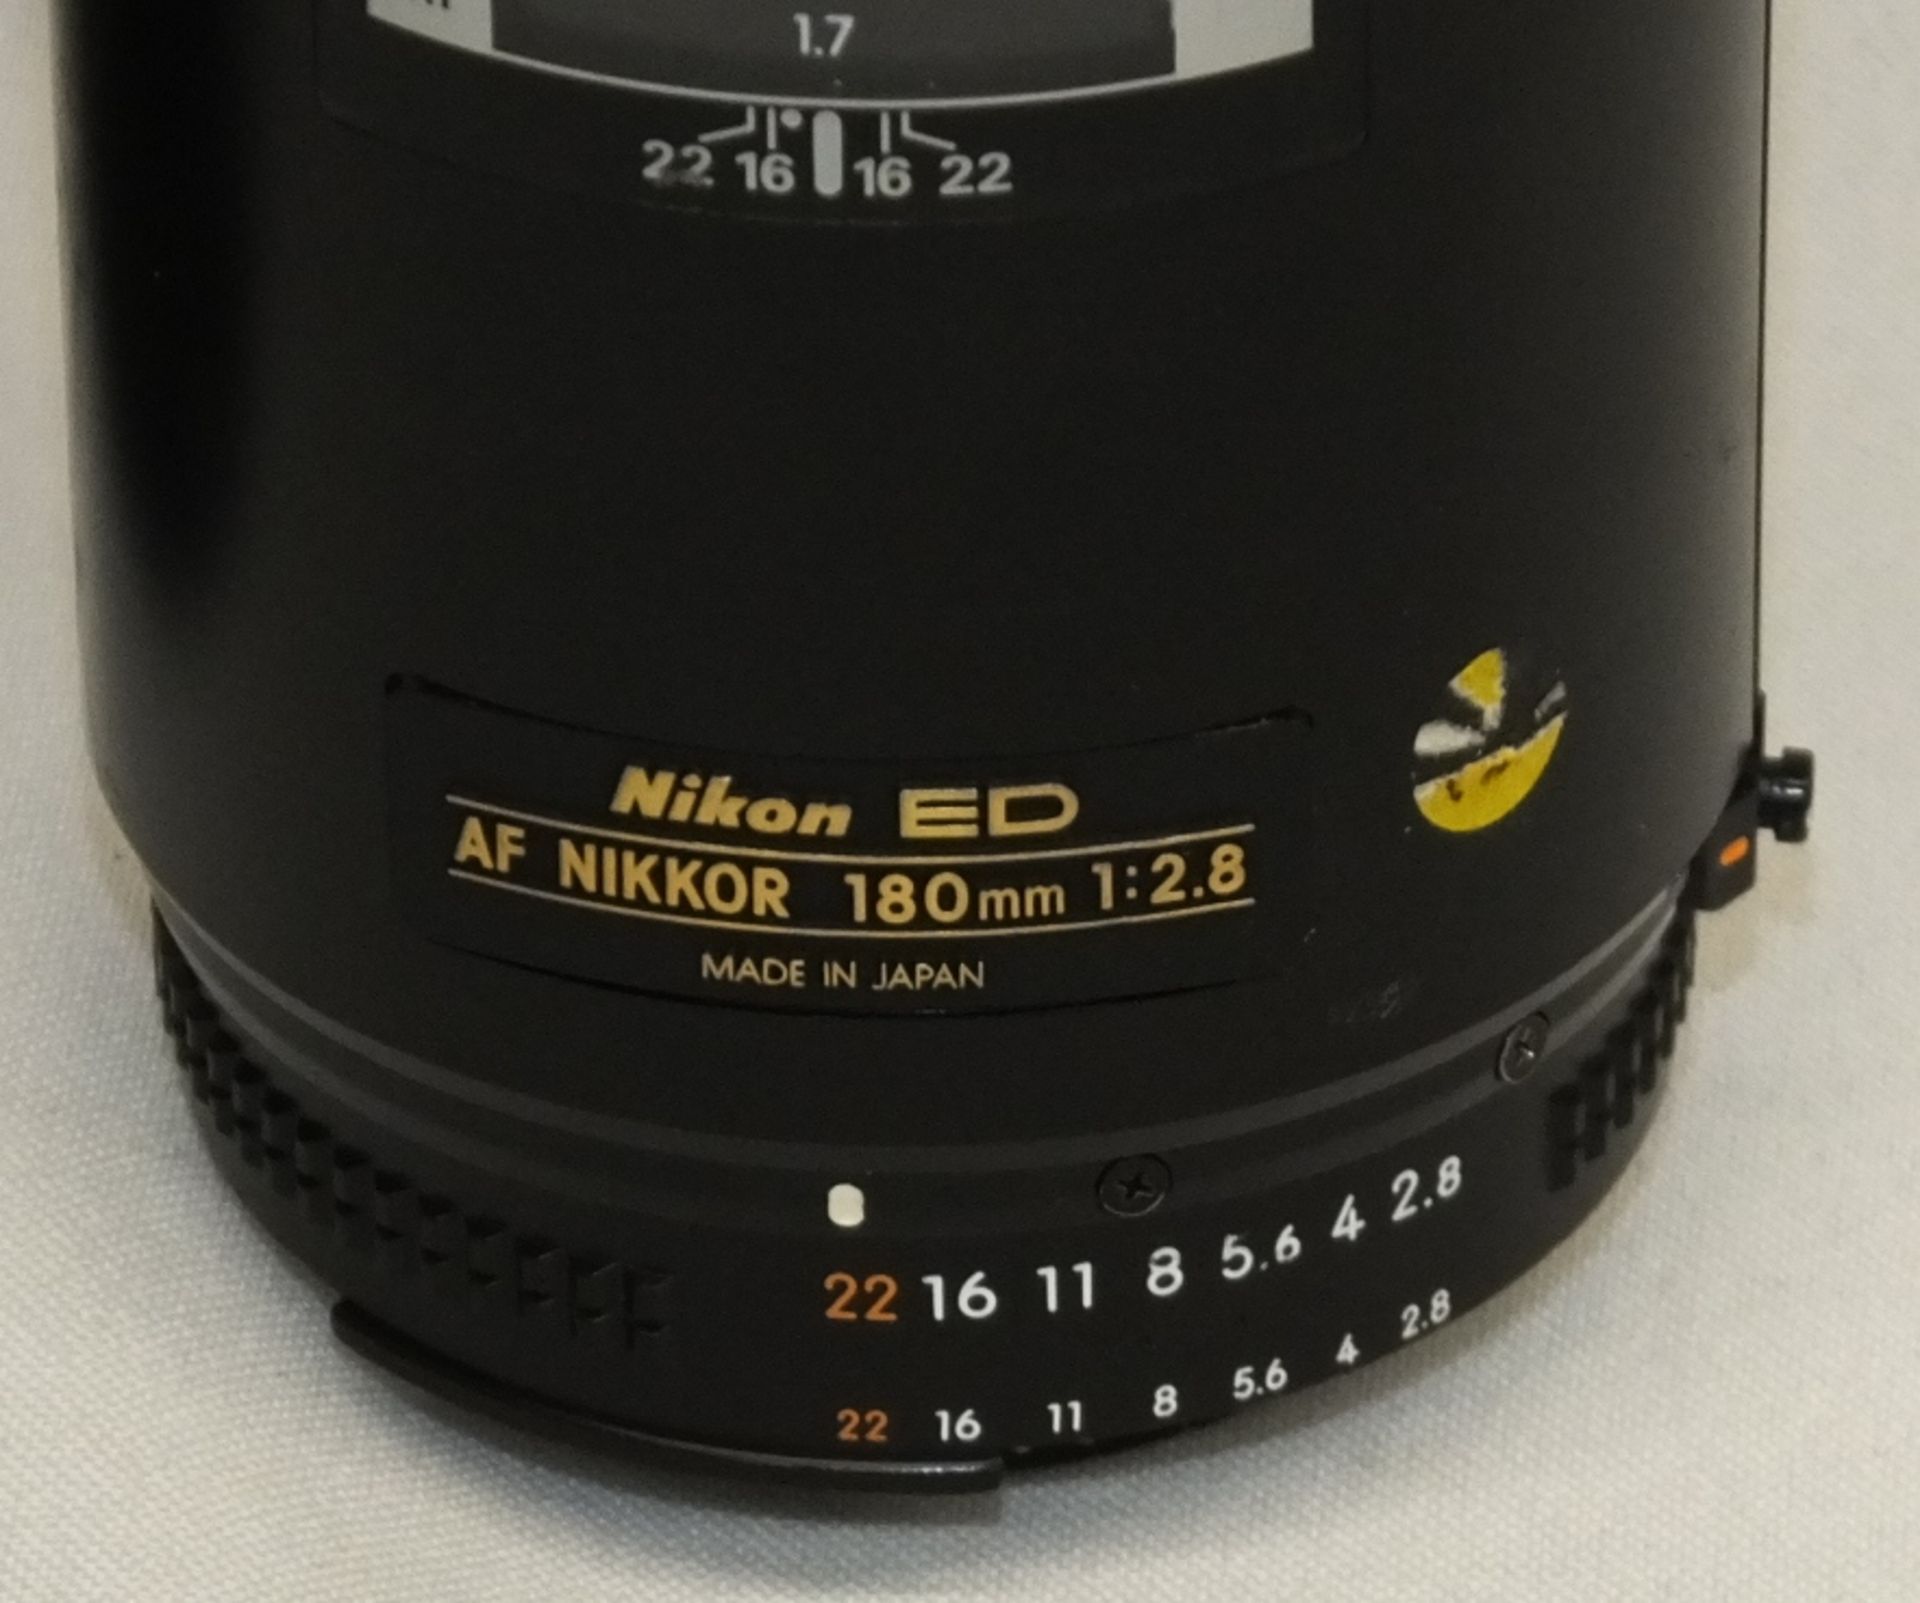 Nikon ED AF Nikkor 180mm 1:2.8 Lens with Nikon CL-38 Case - Please see description - Image 2 of 4